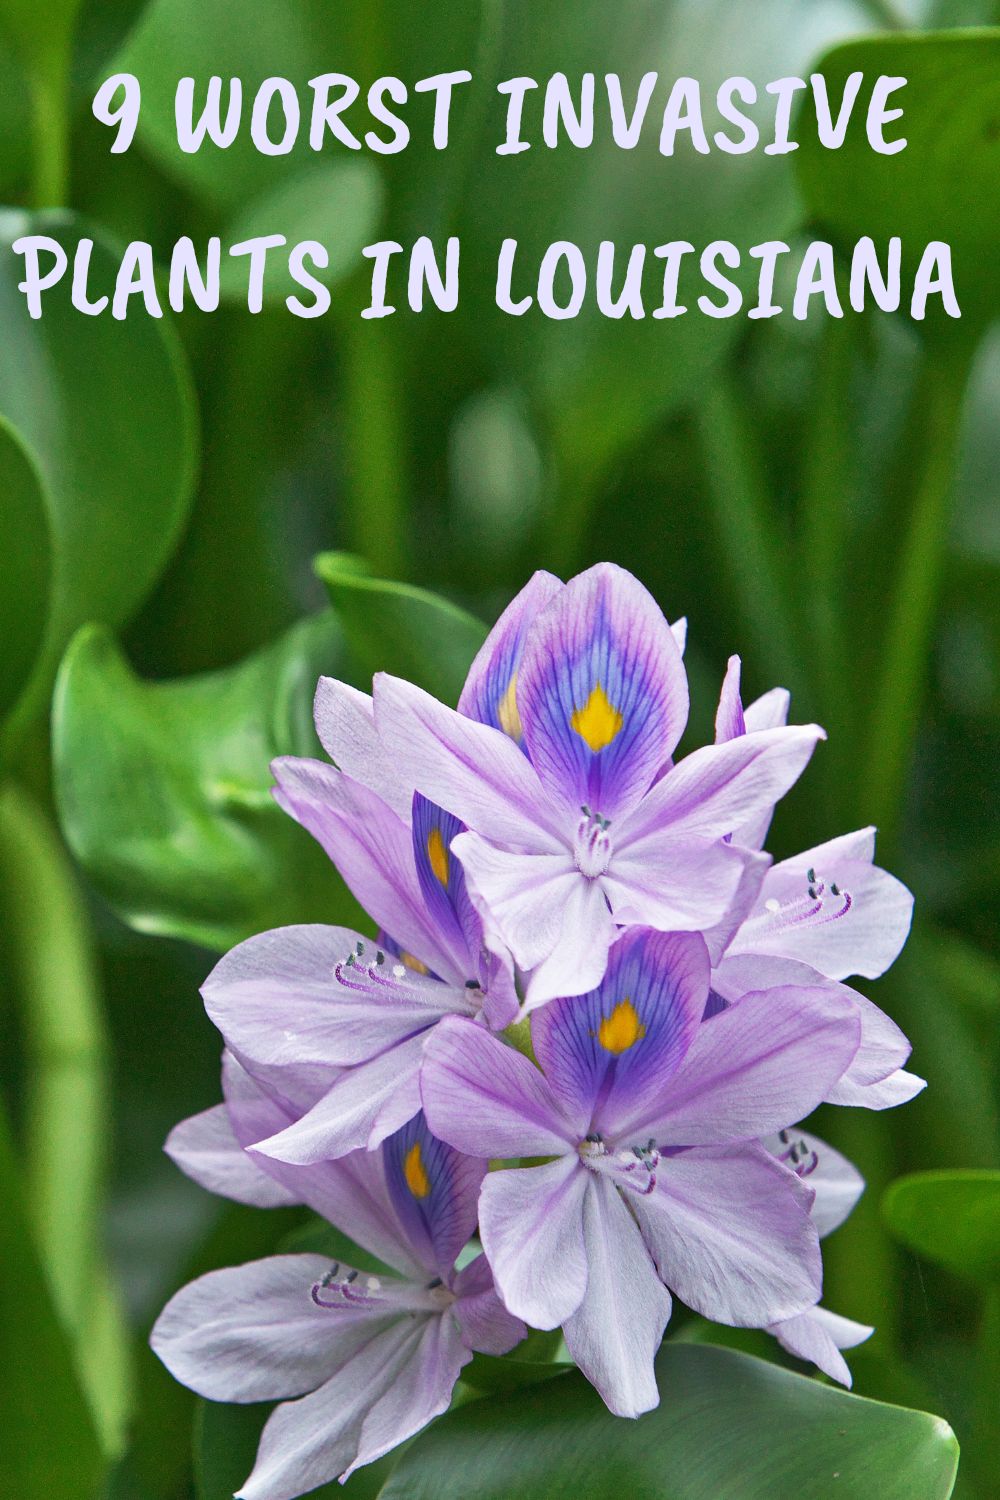 9 worst invasive plants in Louisiana.